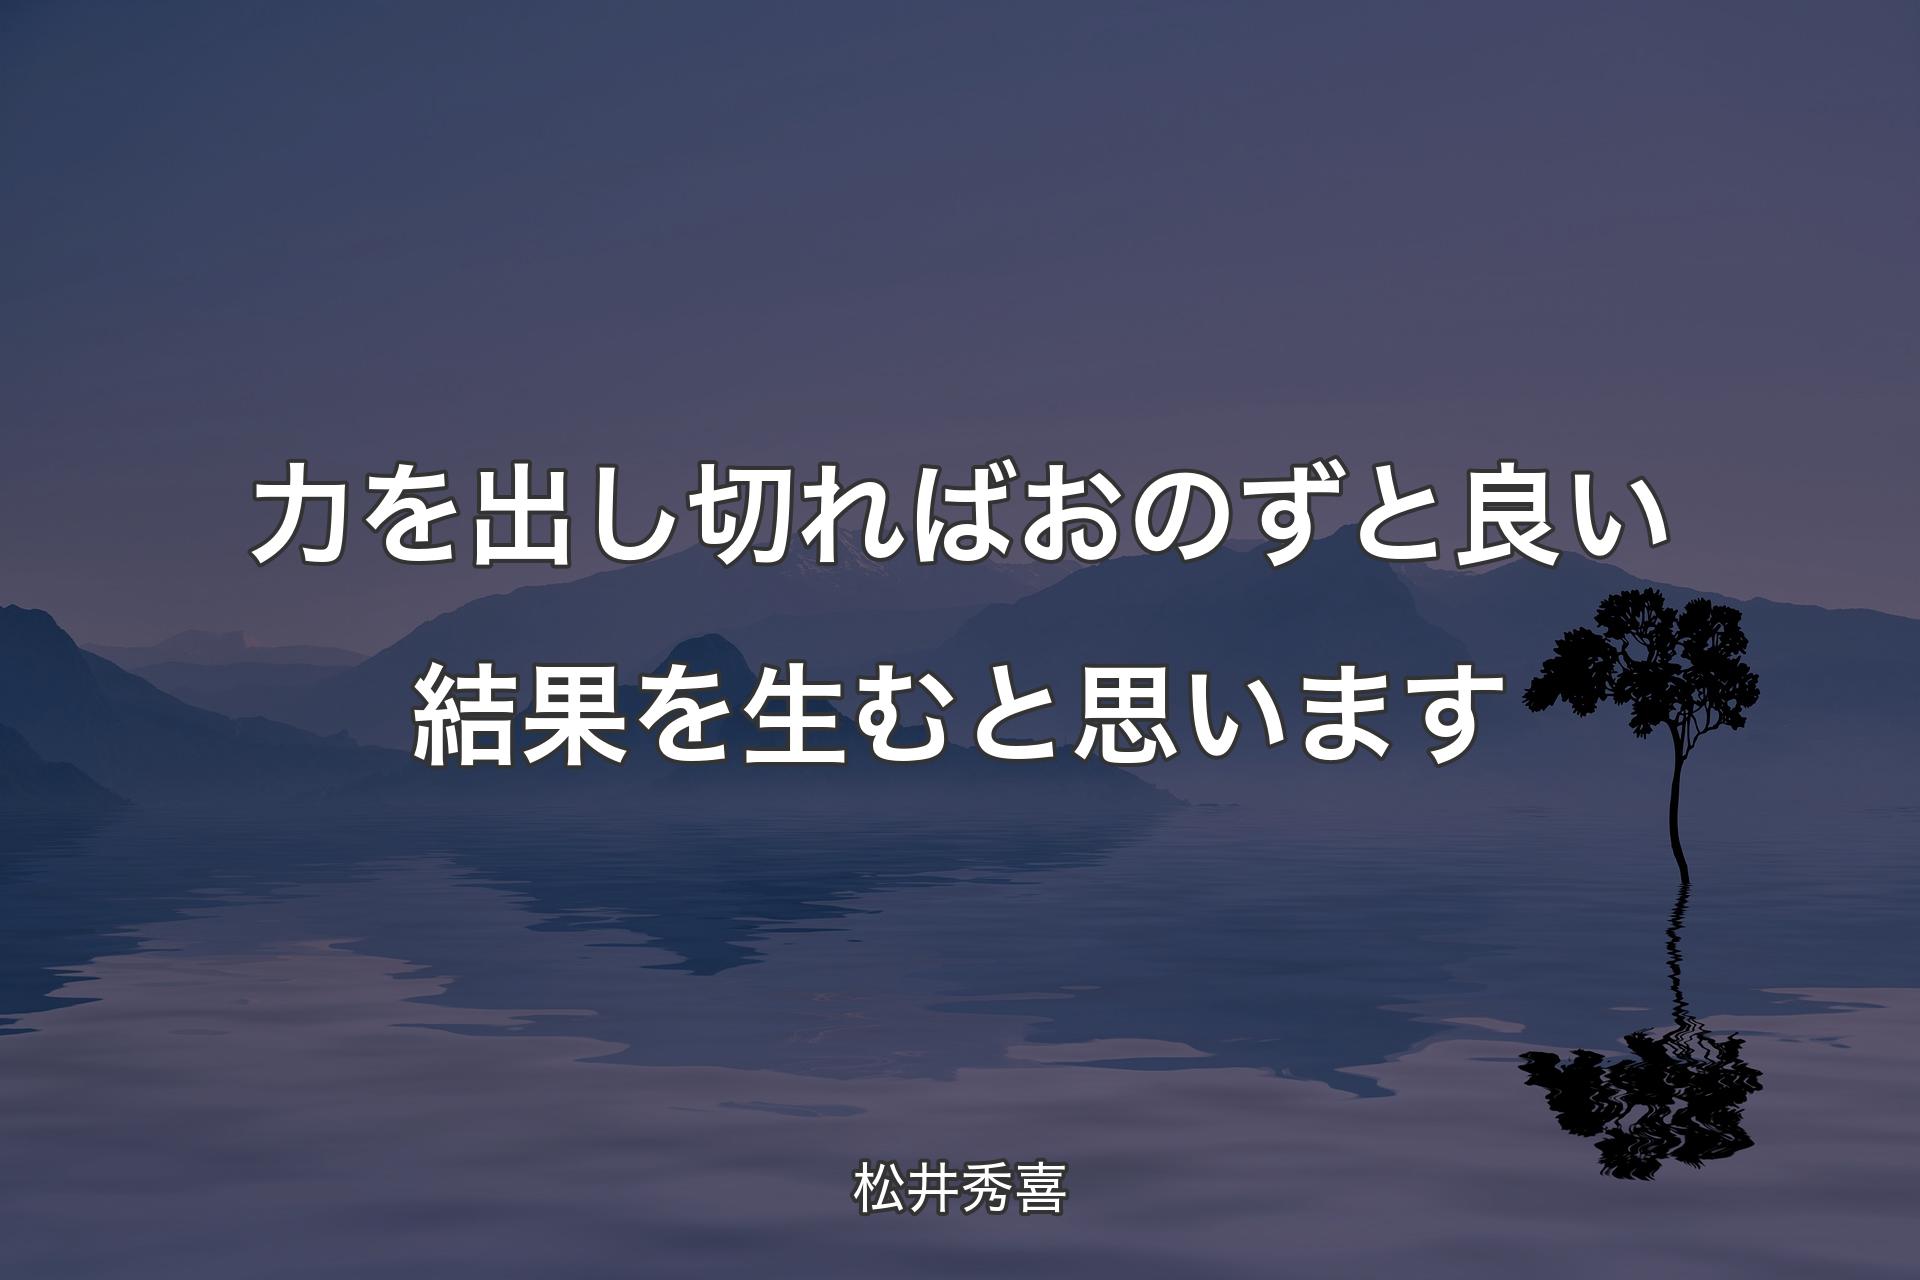 【背景4】力を出し切ればおのずと良い結果を生むと思います - 松井秀喜